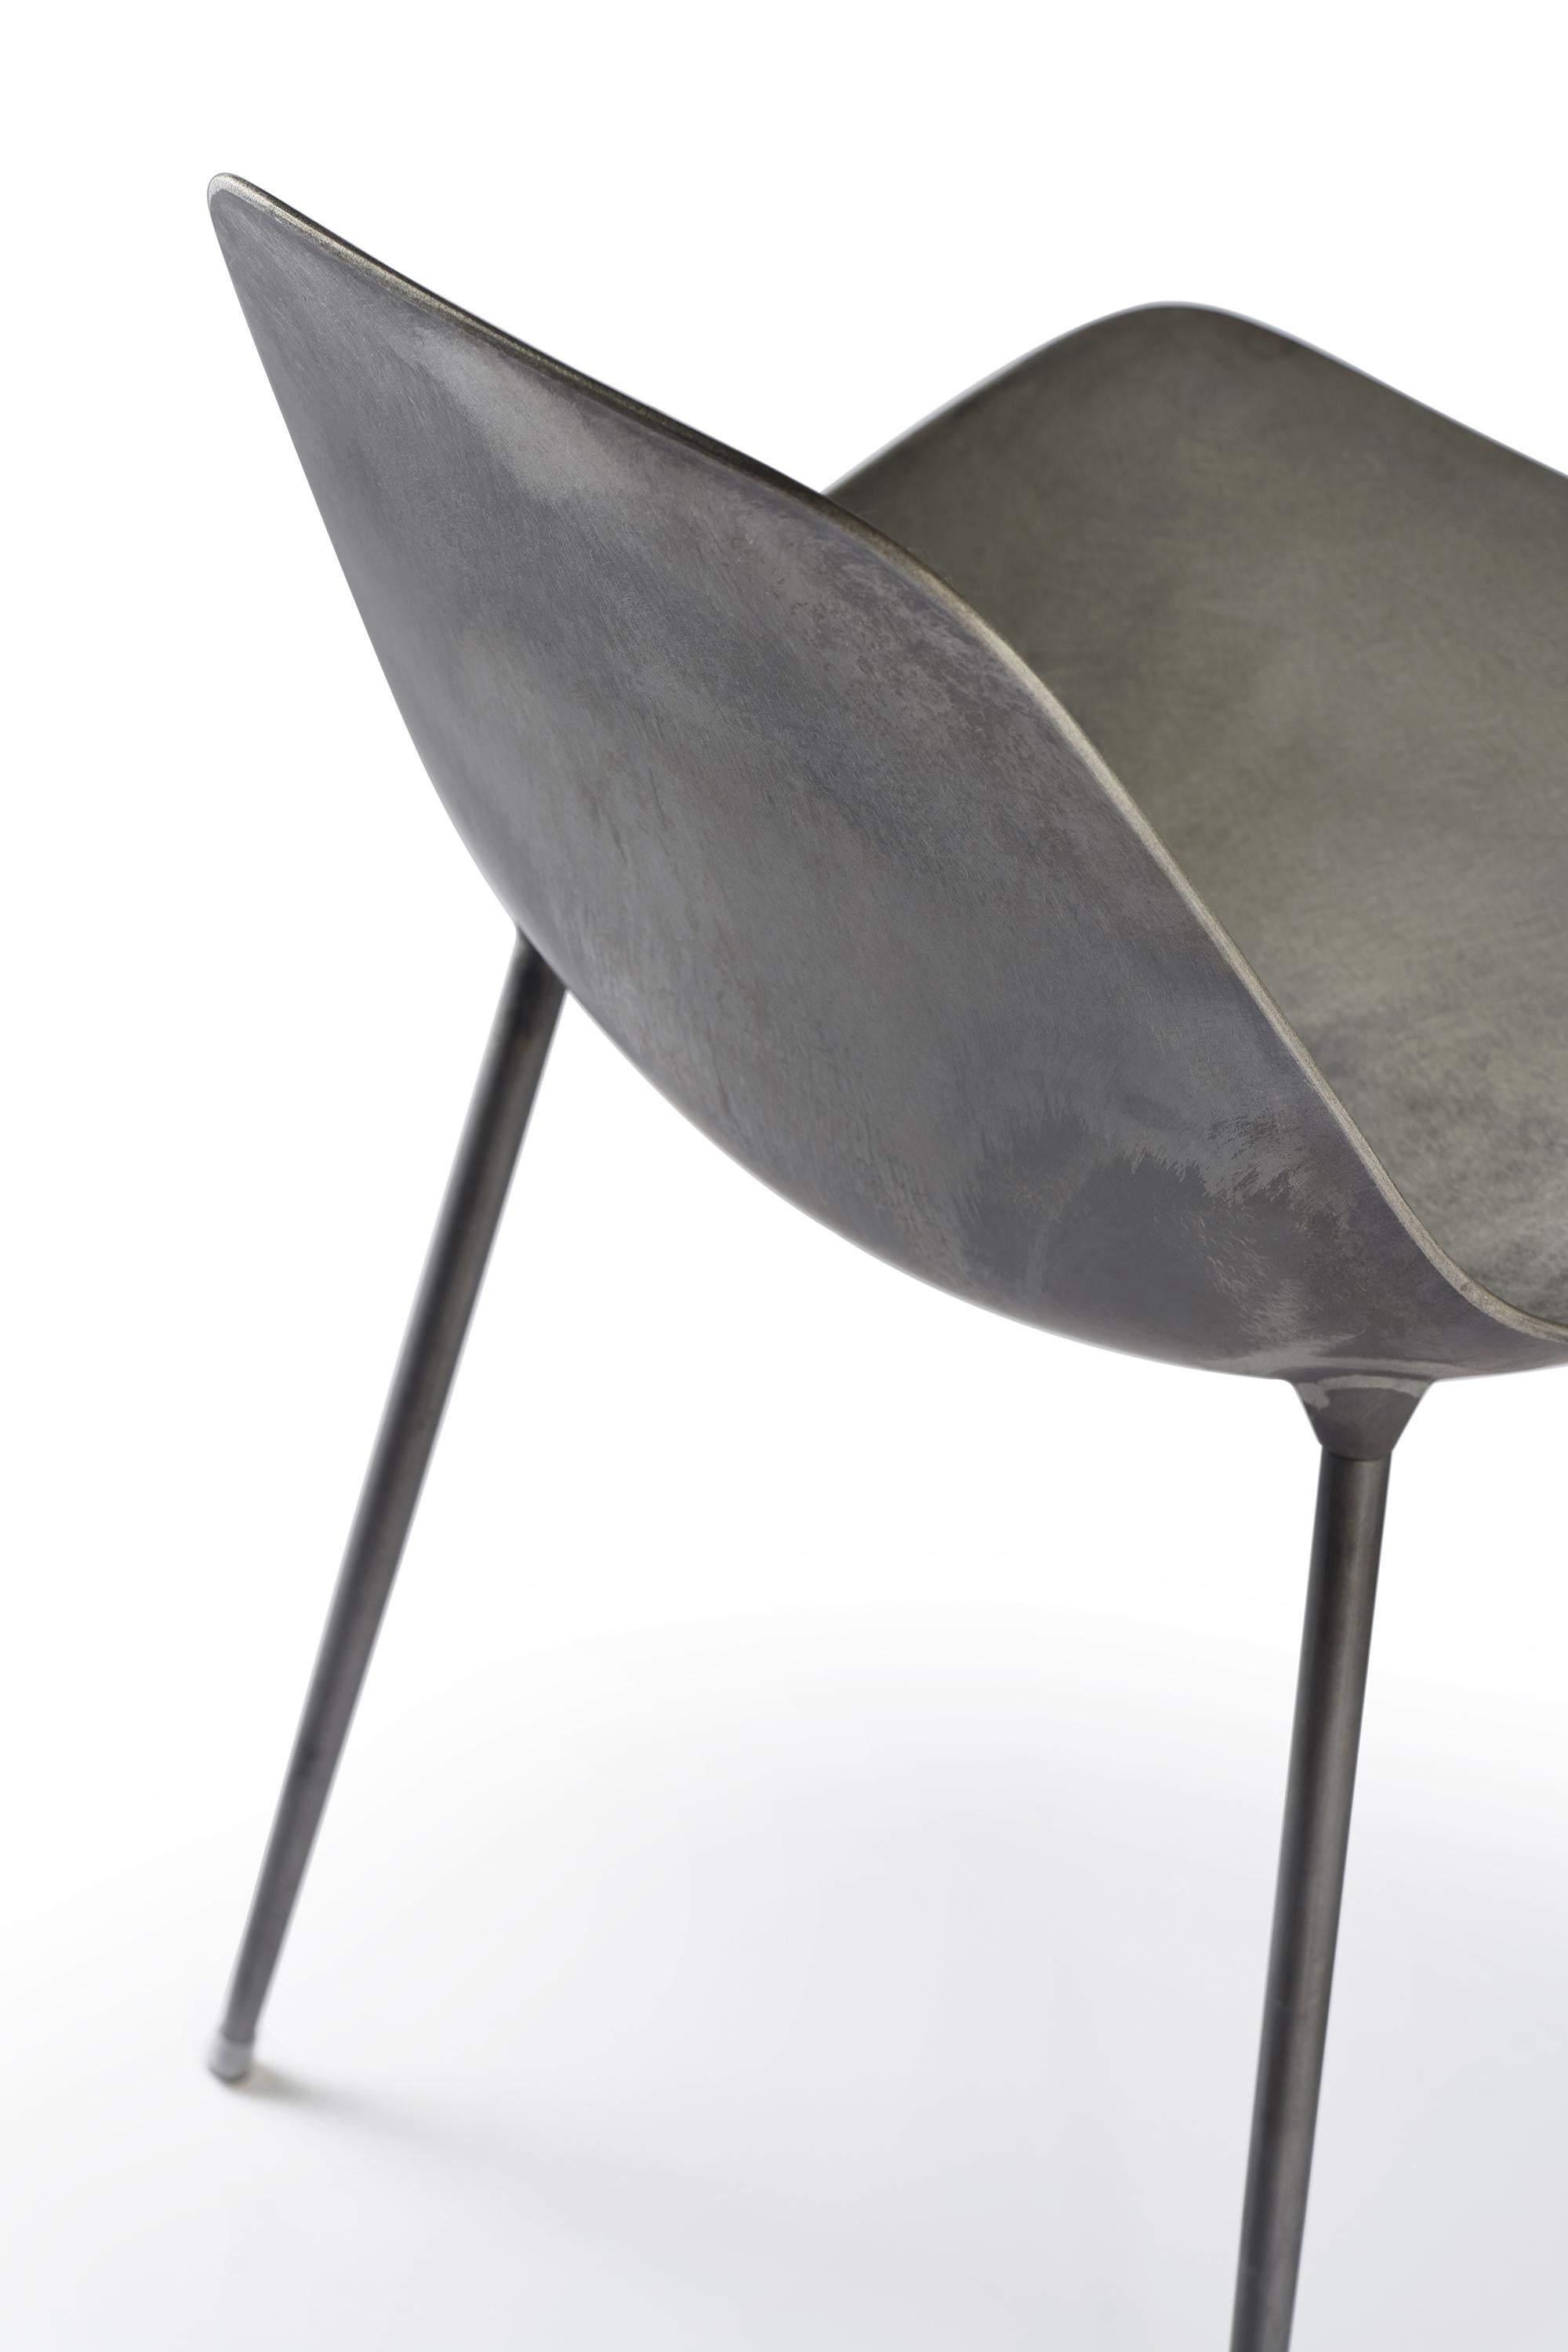 Italian Opinion Ciatti Mammamia Raw Non Stackable Chair by Marcello Ziliani For Sale